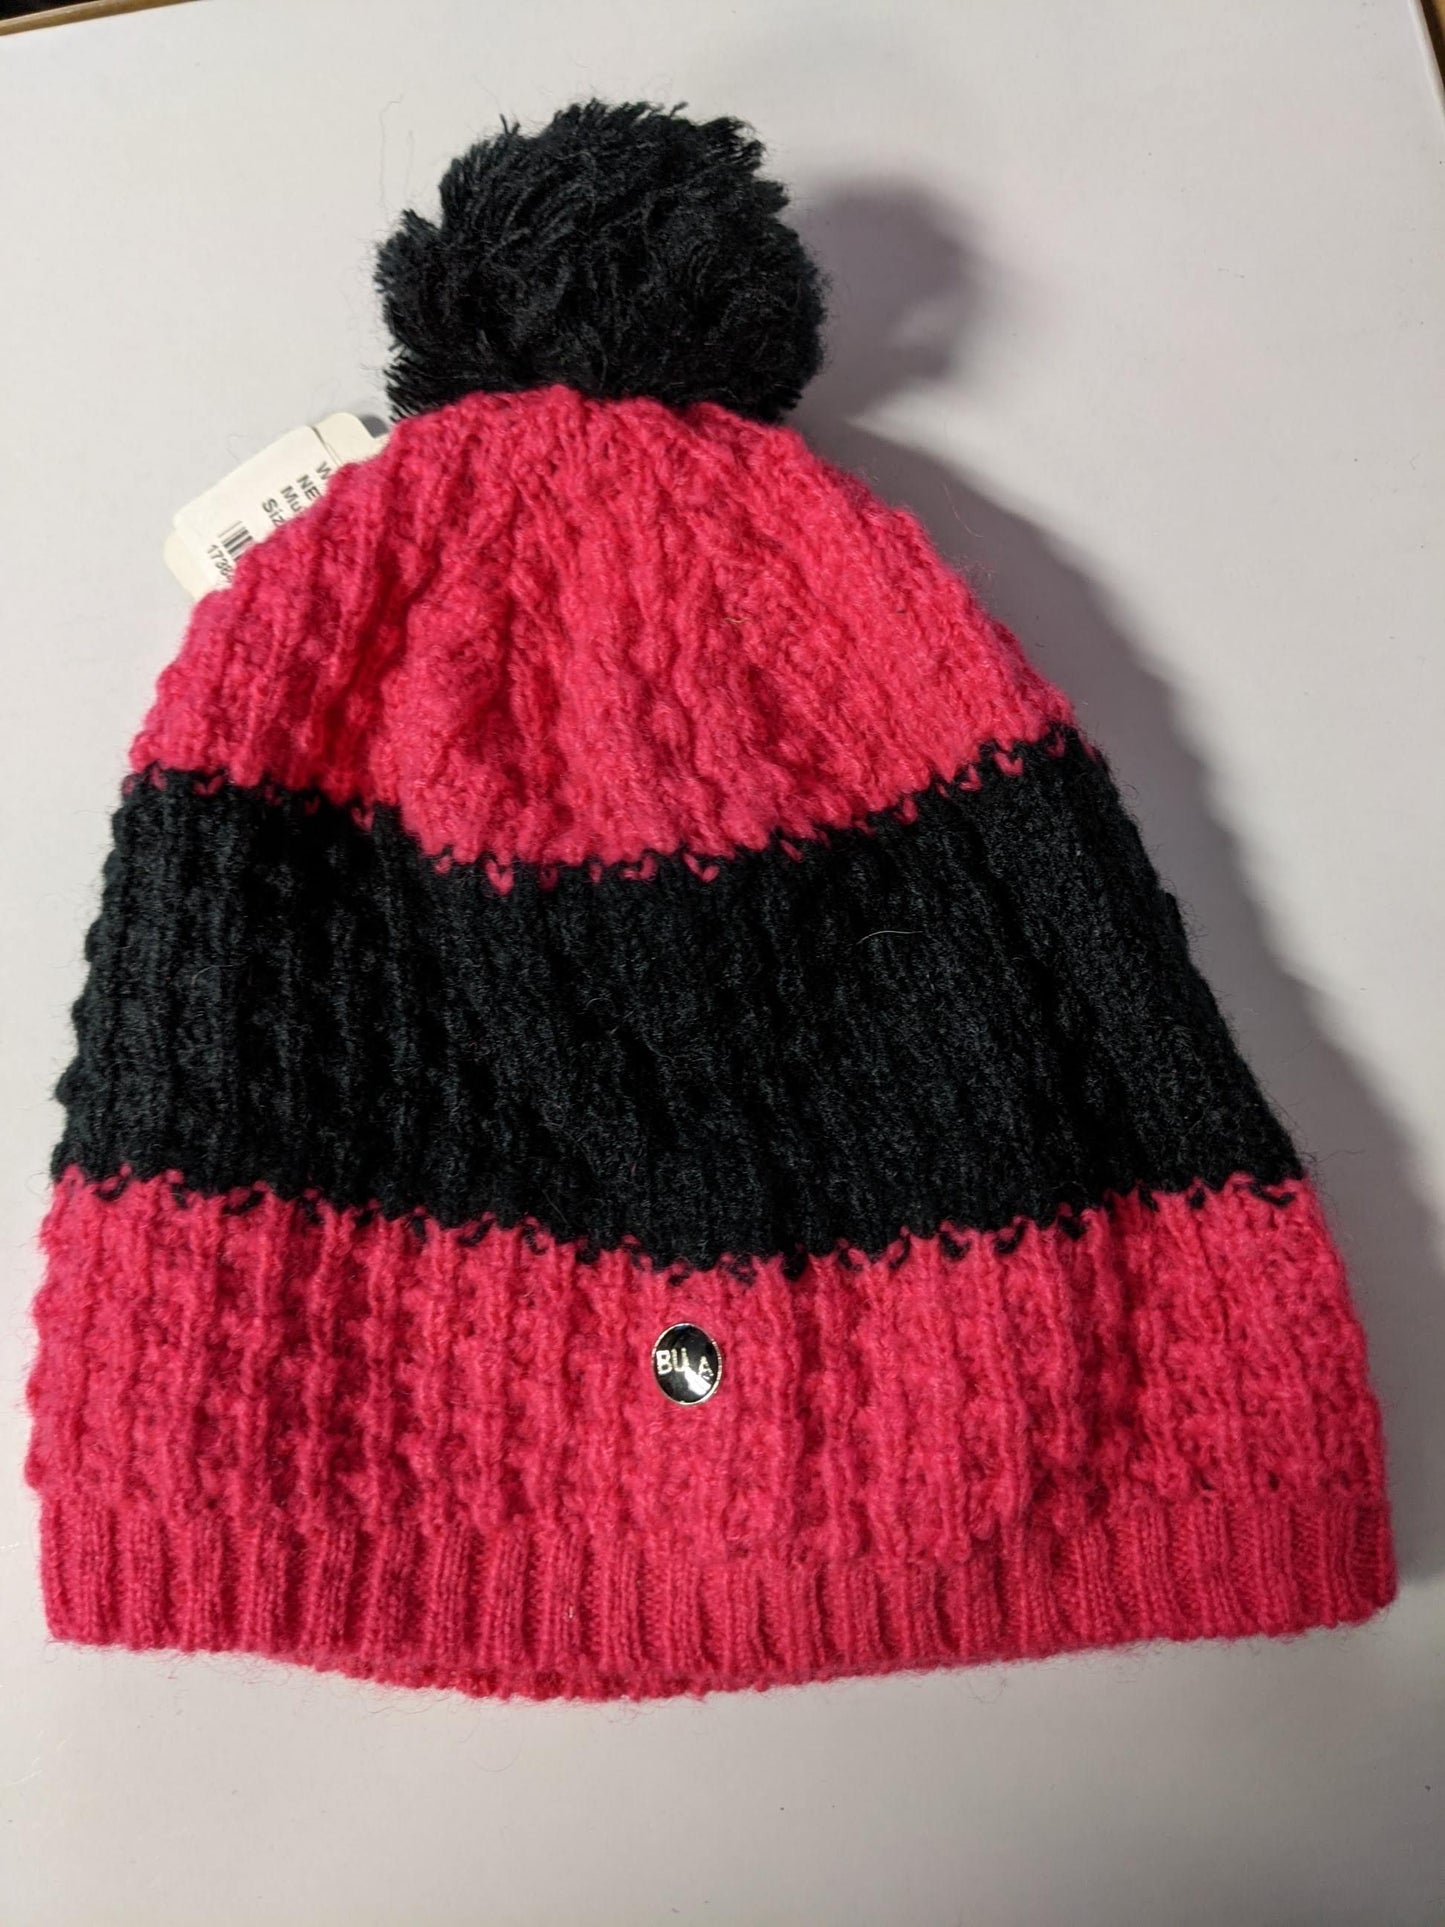 Bula Winter Hat, One Size, Multicolored, New